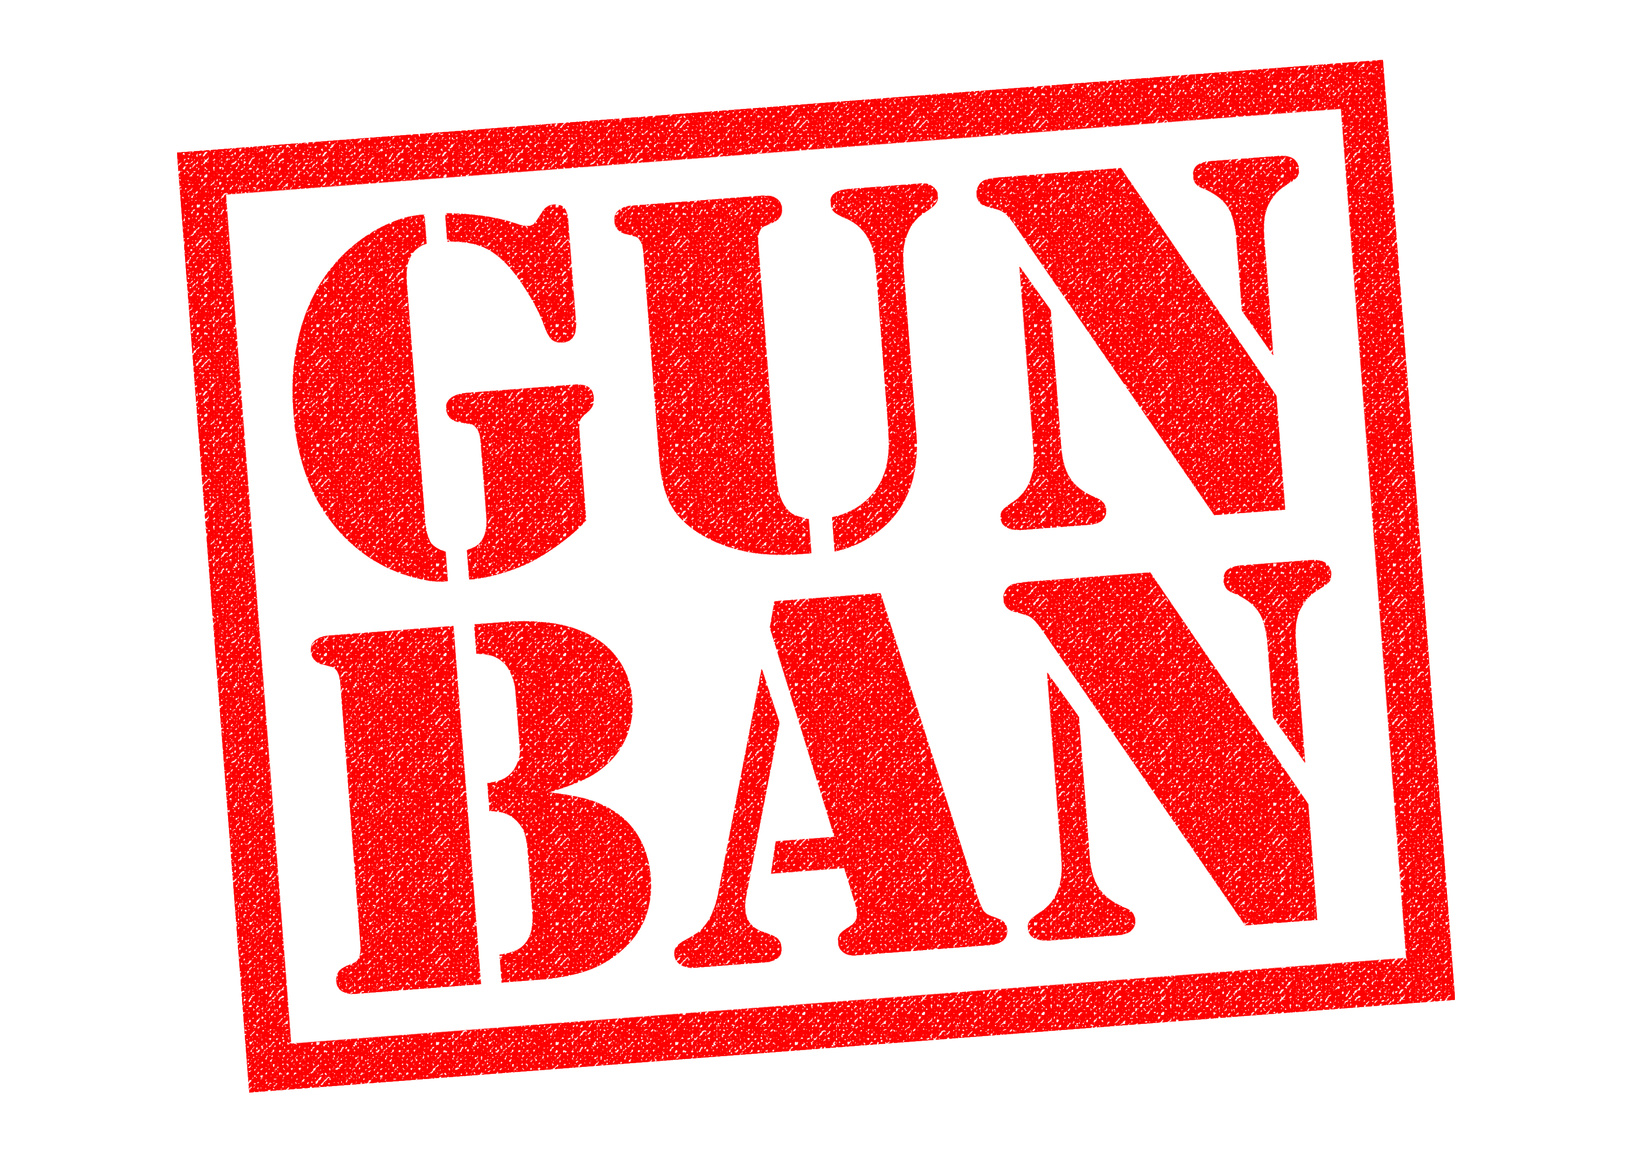 Ban Gun. Стоп бан. No Gun no fun. Ган бан. Стоп бан песни